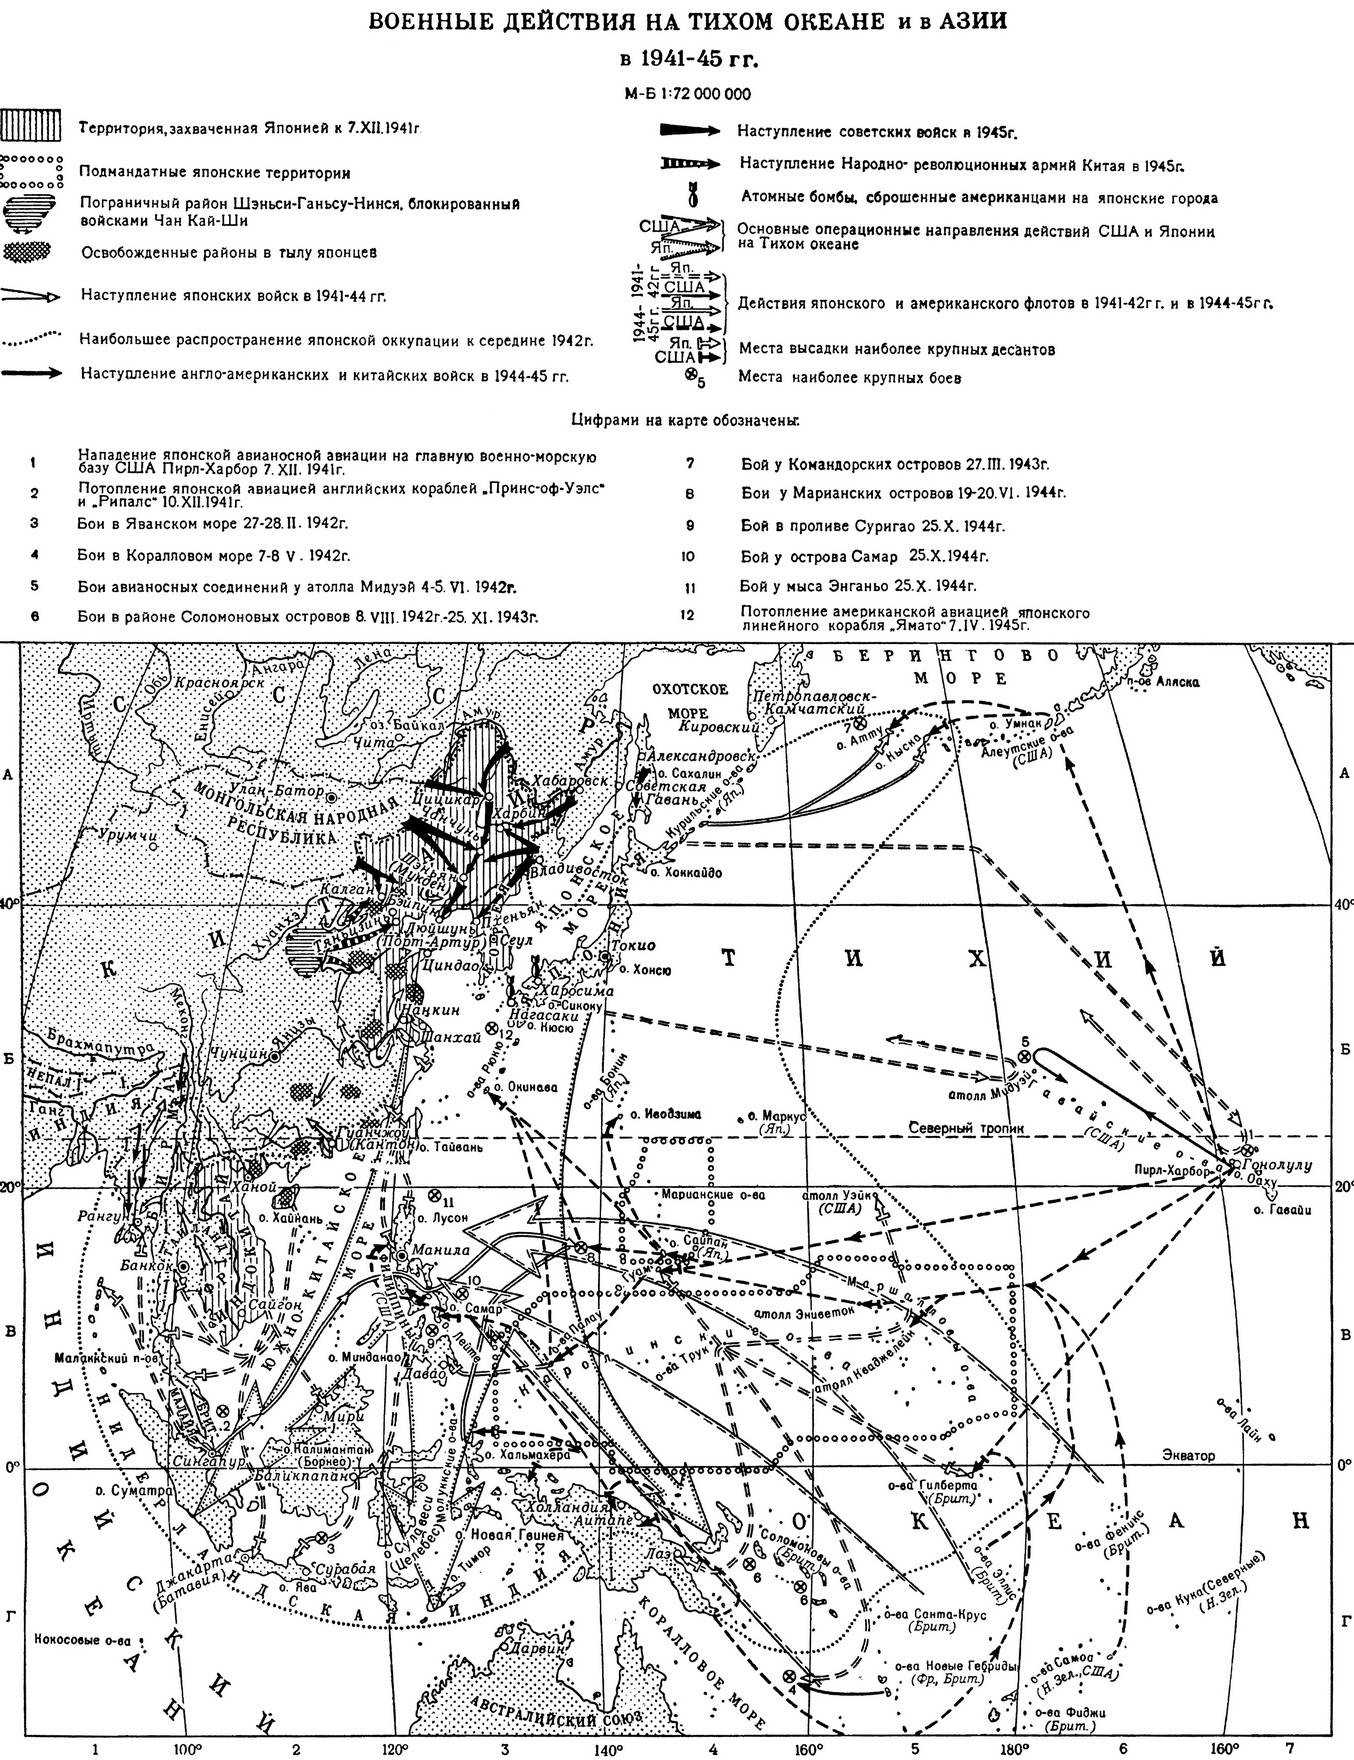 Карта военных действий вторая мировая. Тихоокеанский театр военных действий второй мировой войны карта. Военные действия на тихом океане и в Азии в 1941 1945. Военные действия на тихом океане и в Азии в 1943-1945.